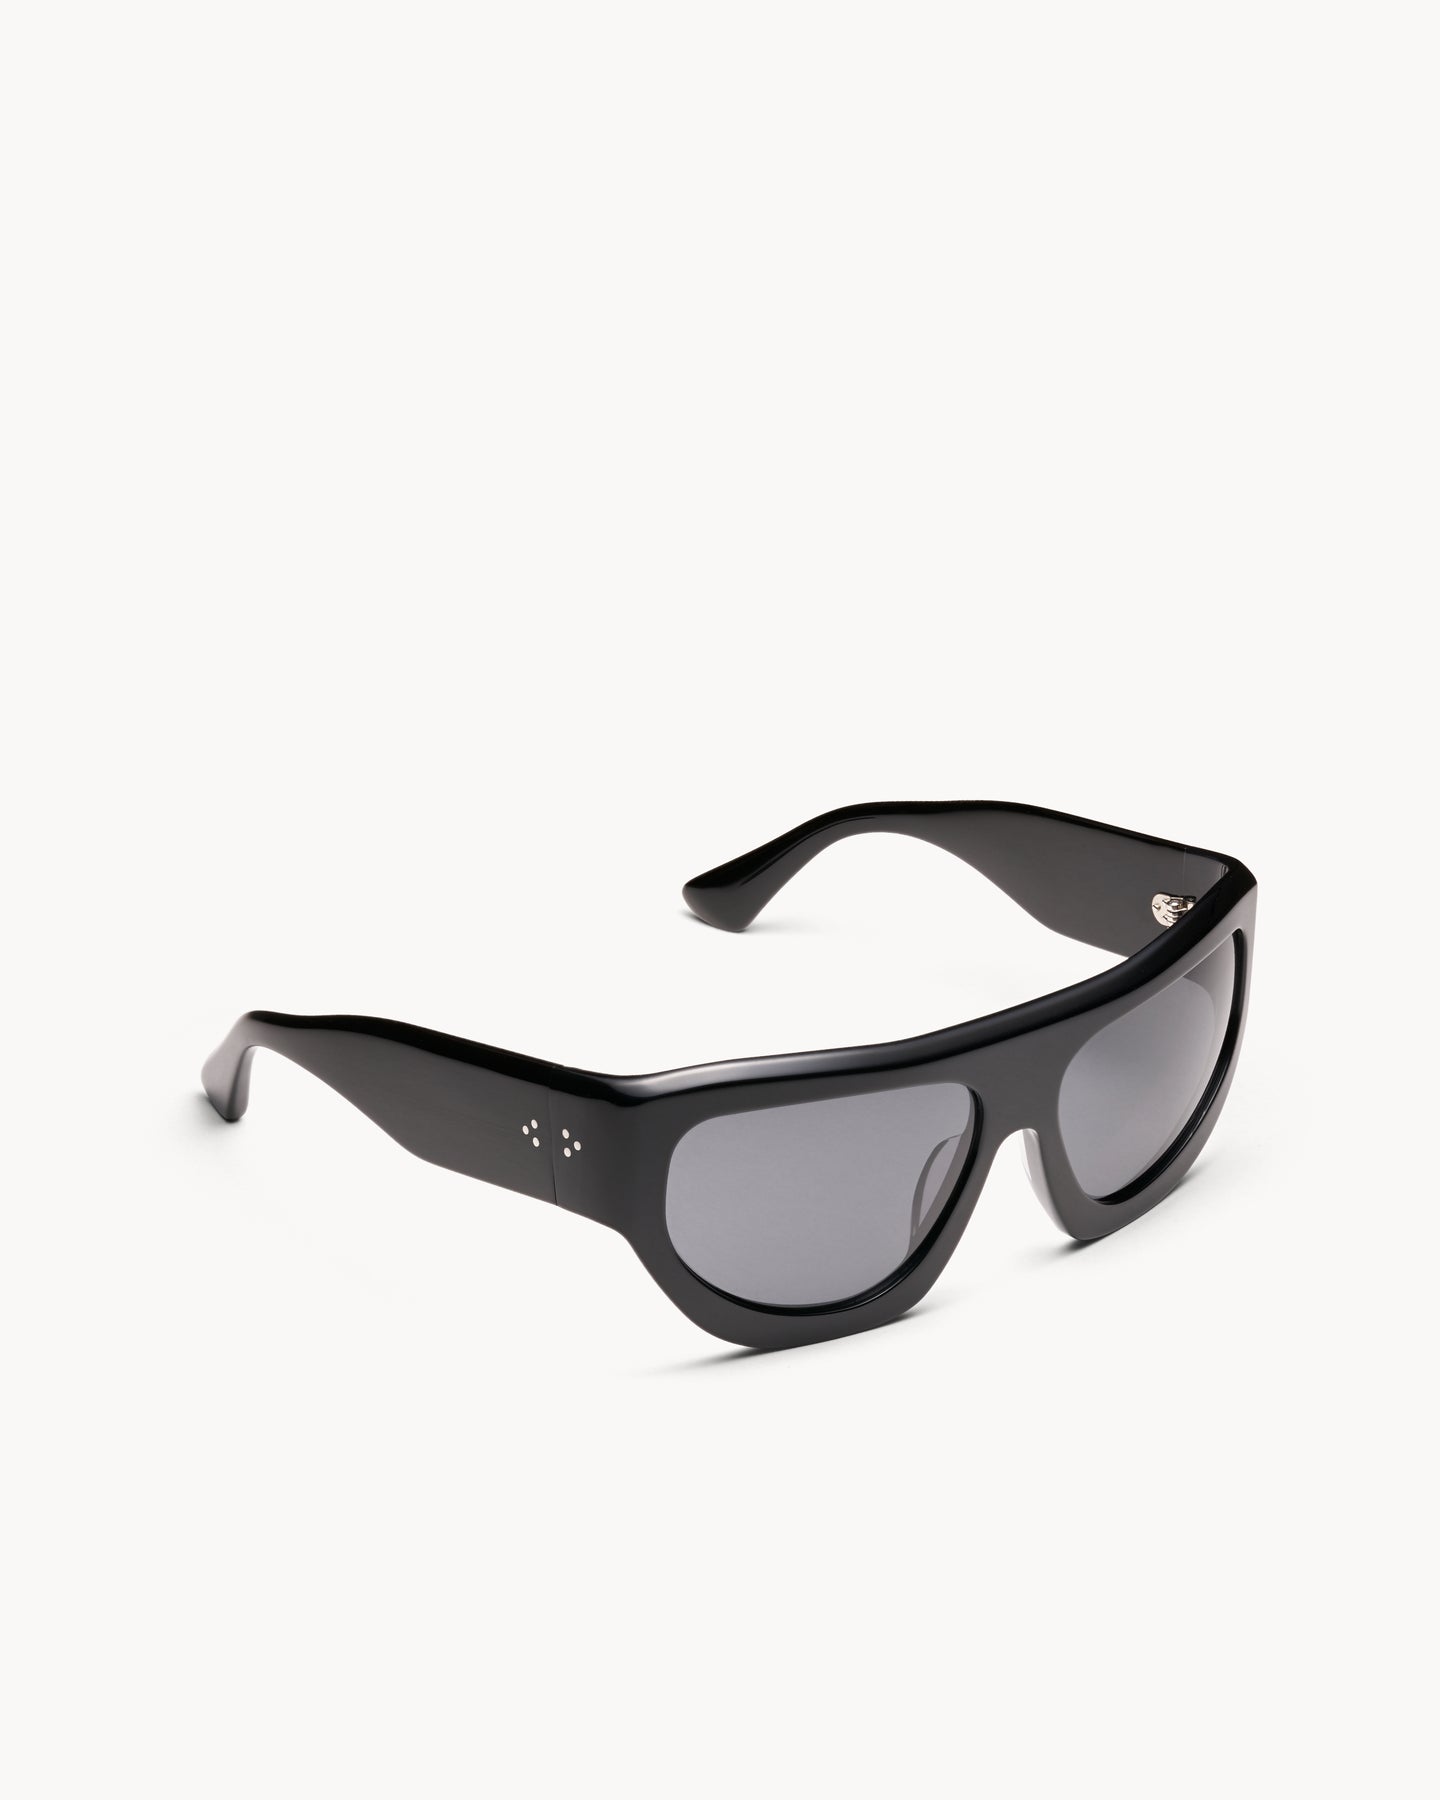 Port Tanger Dost Sunglasses in Black Acetate and Black Lenses 2